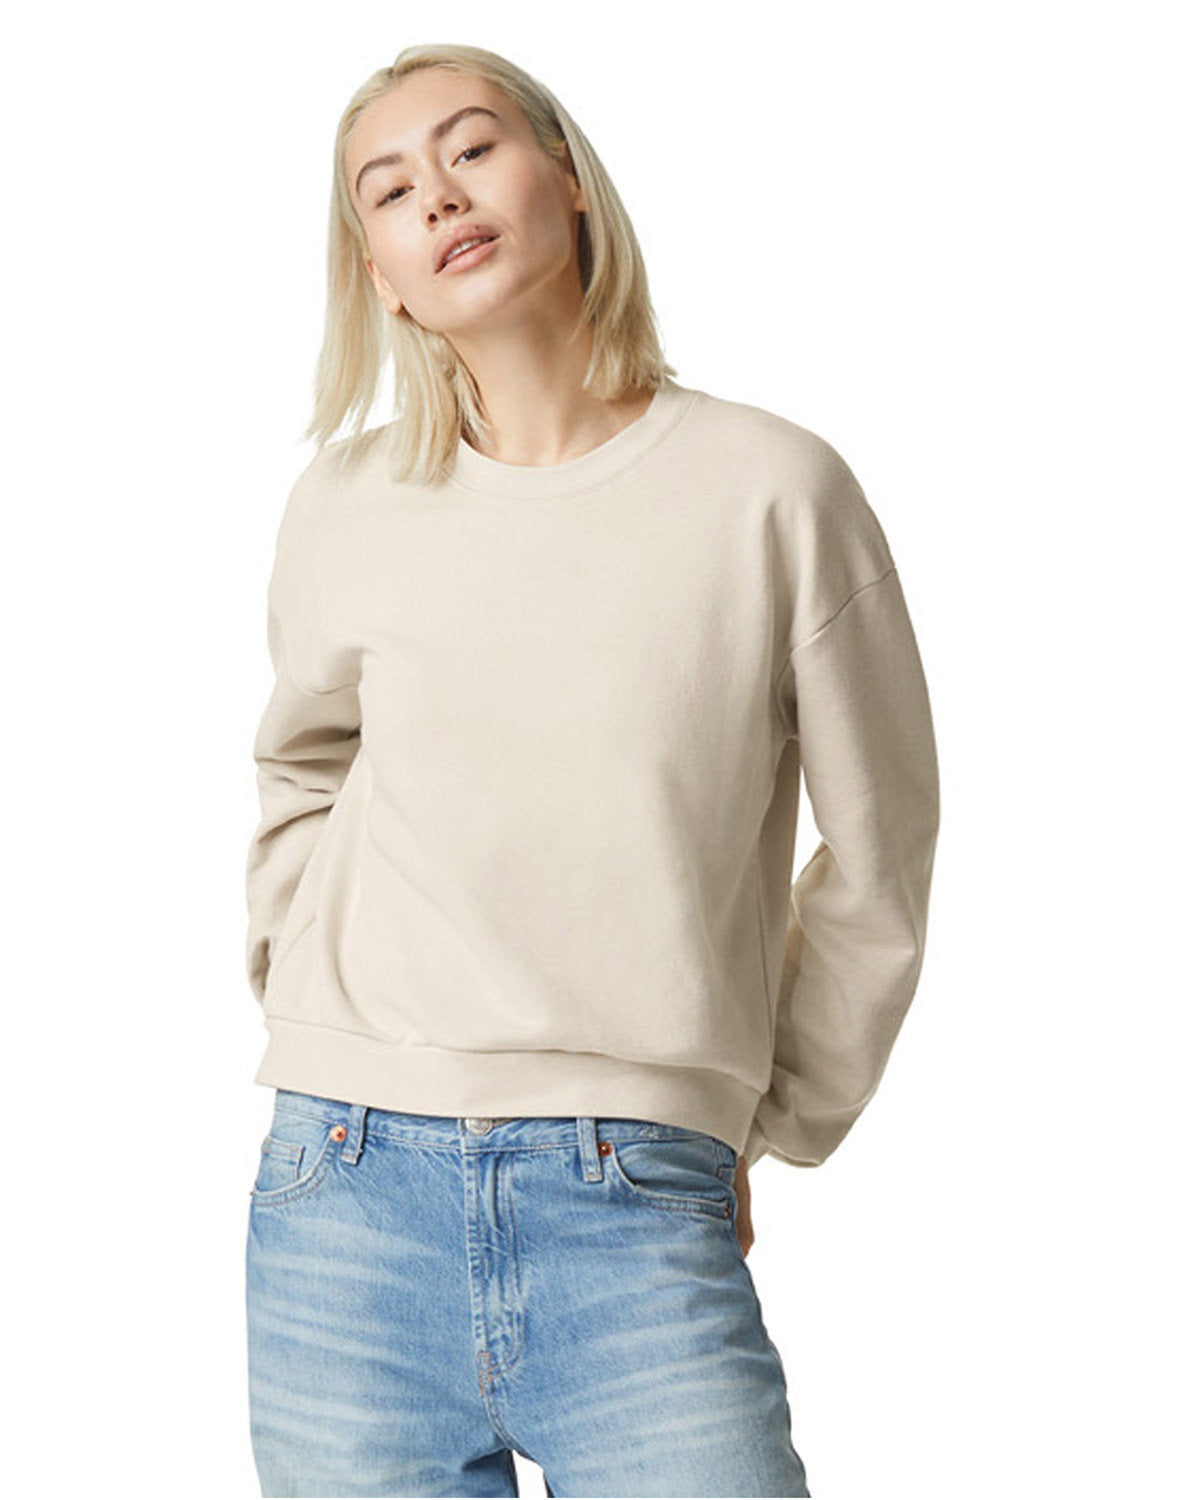 American Apparel Ladies' ReFlex Fleece Crewneck Sweatshirt: Redefining Cozy Chic